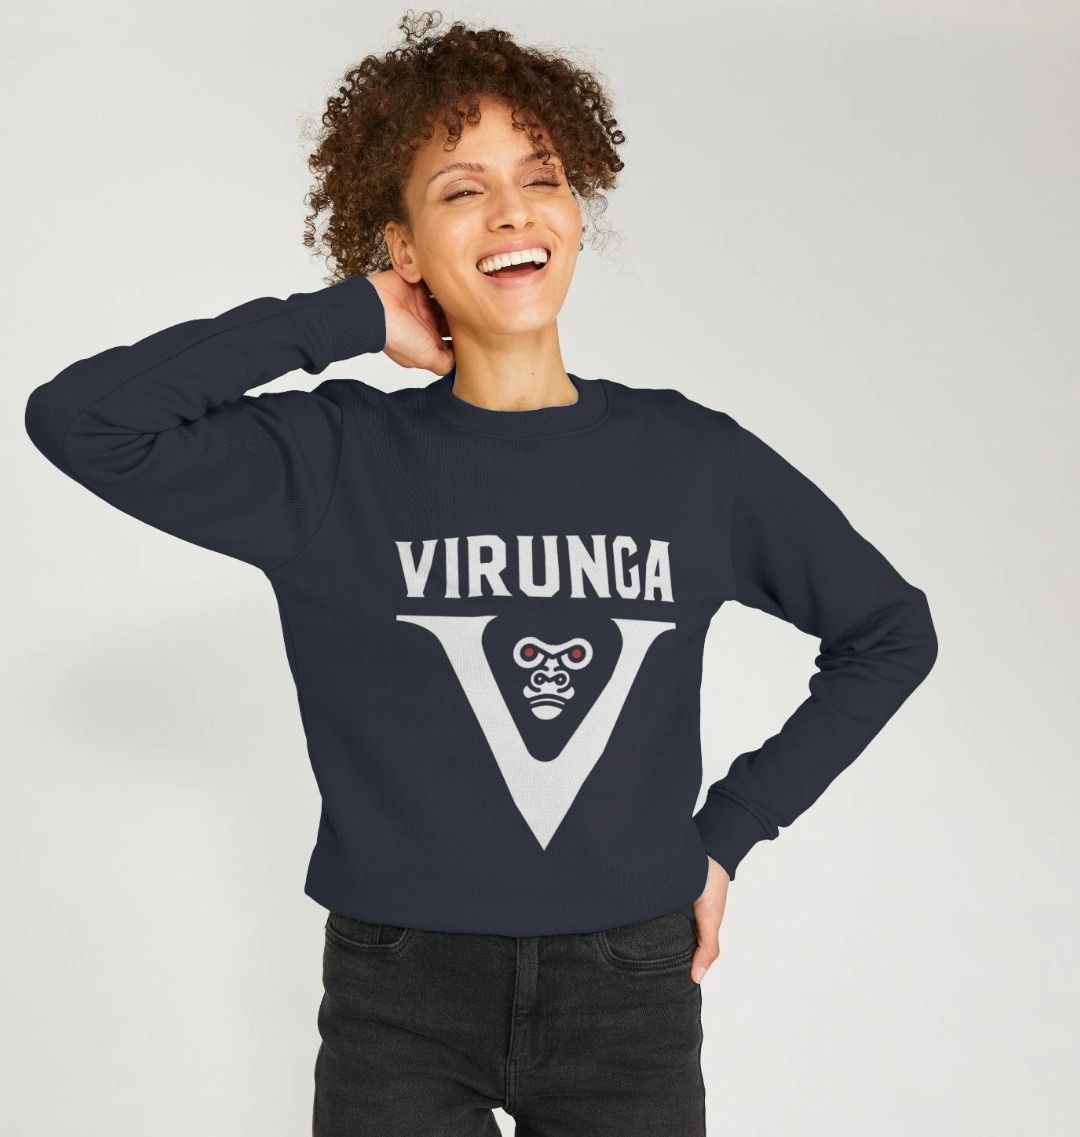 V for Virunga Women's Sweater